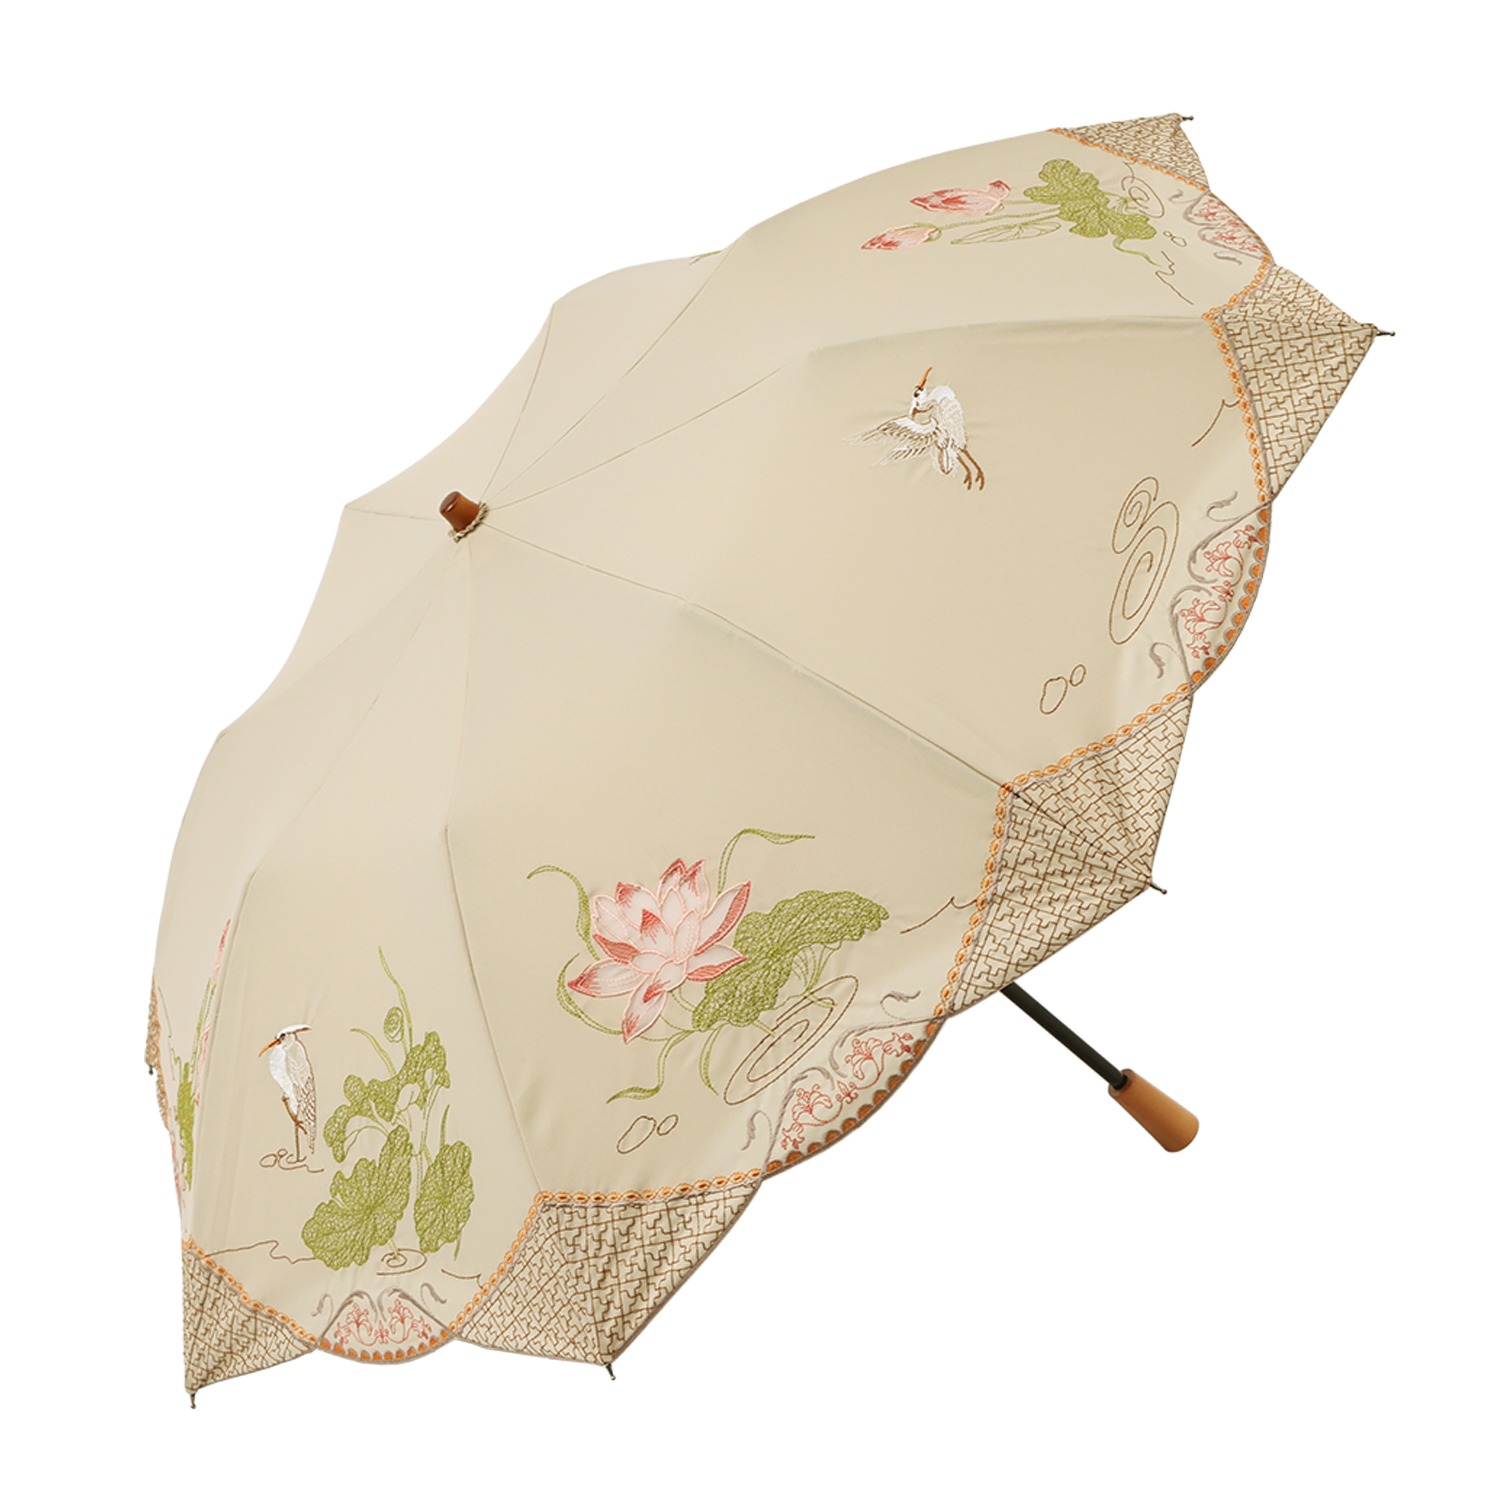 シノワズリーモダン  女優日傘プレミアム 蓮花刺しゅう かわず張り ショート折りたたみ日傘